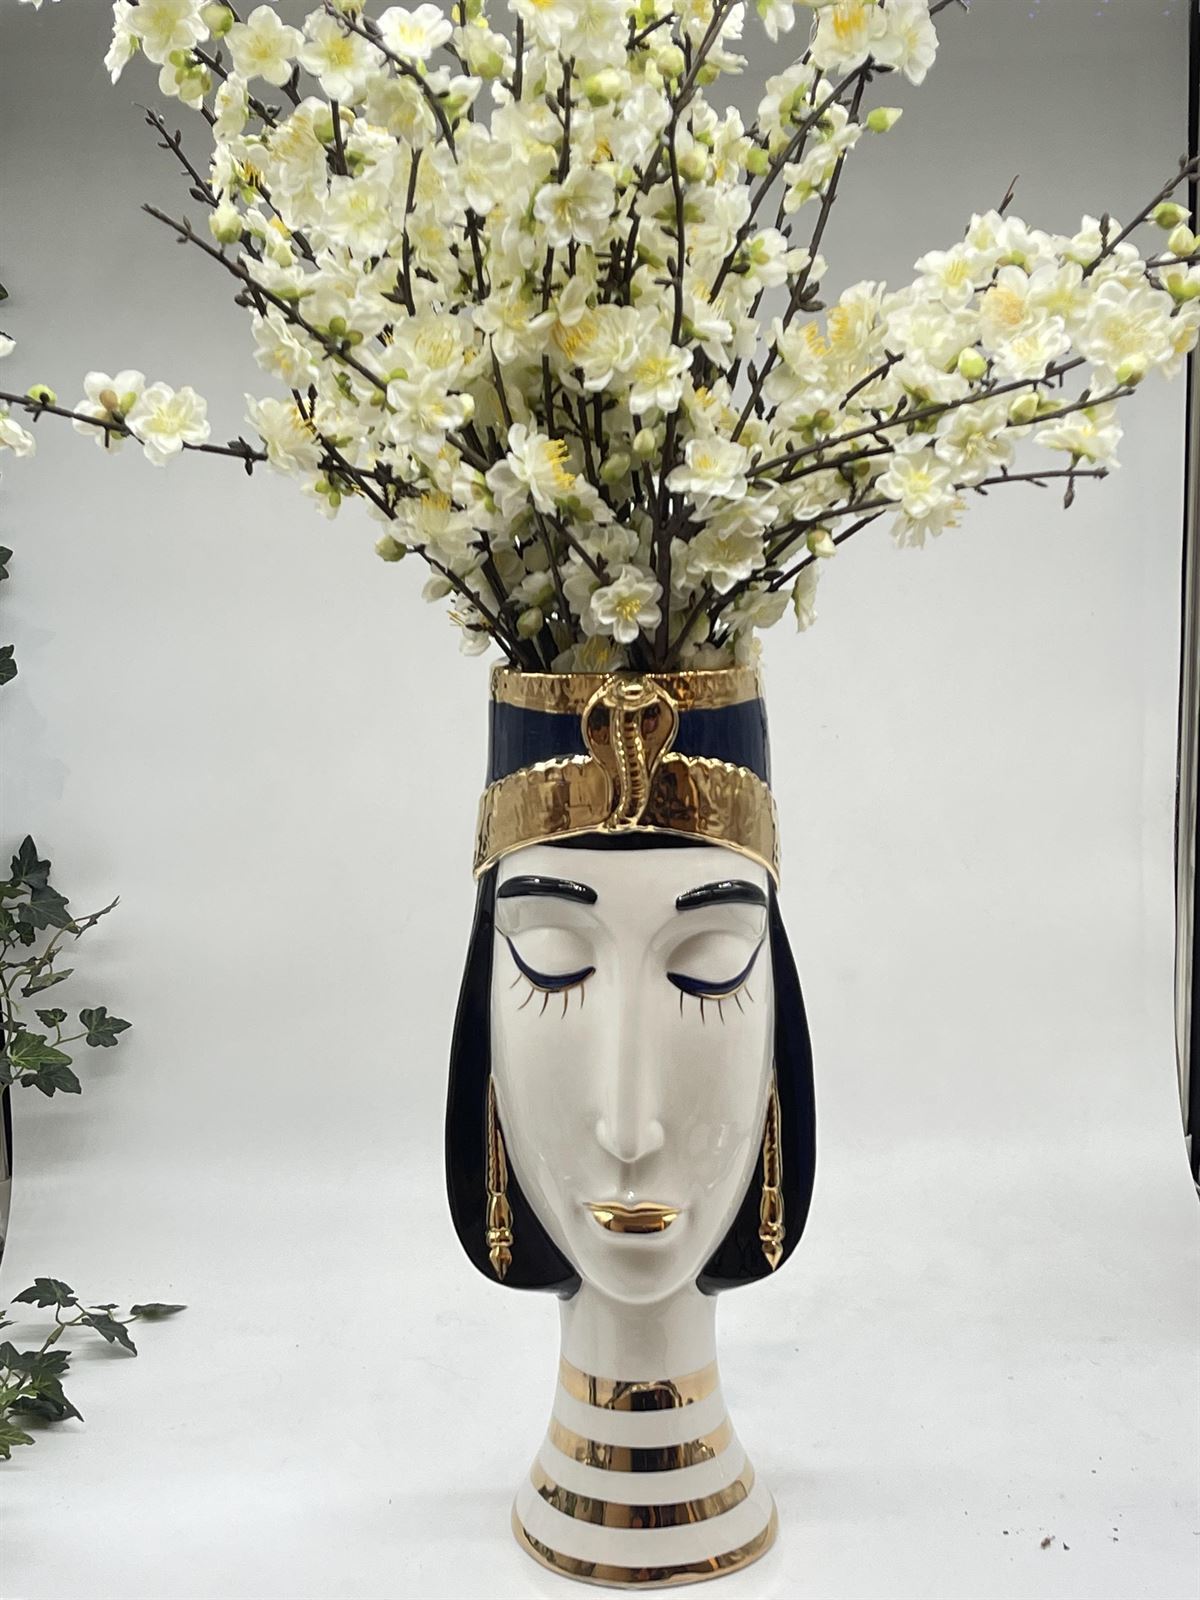 Jarrón alto tamaño medio cara egipcia sin flores - Imagen 1